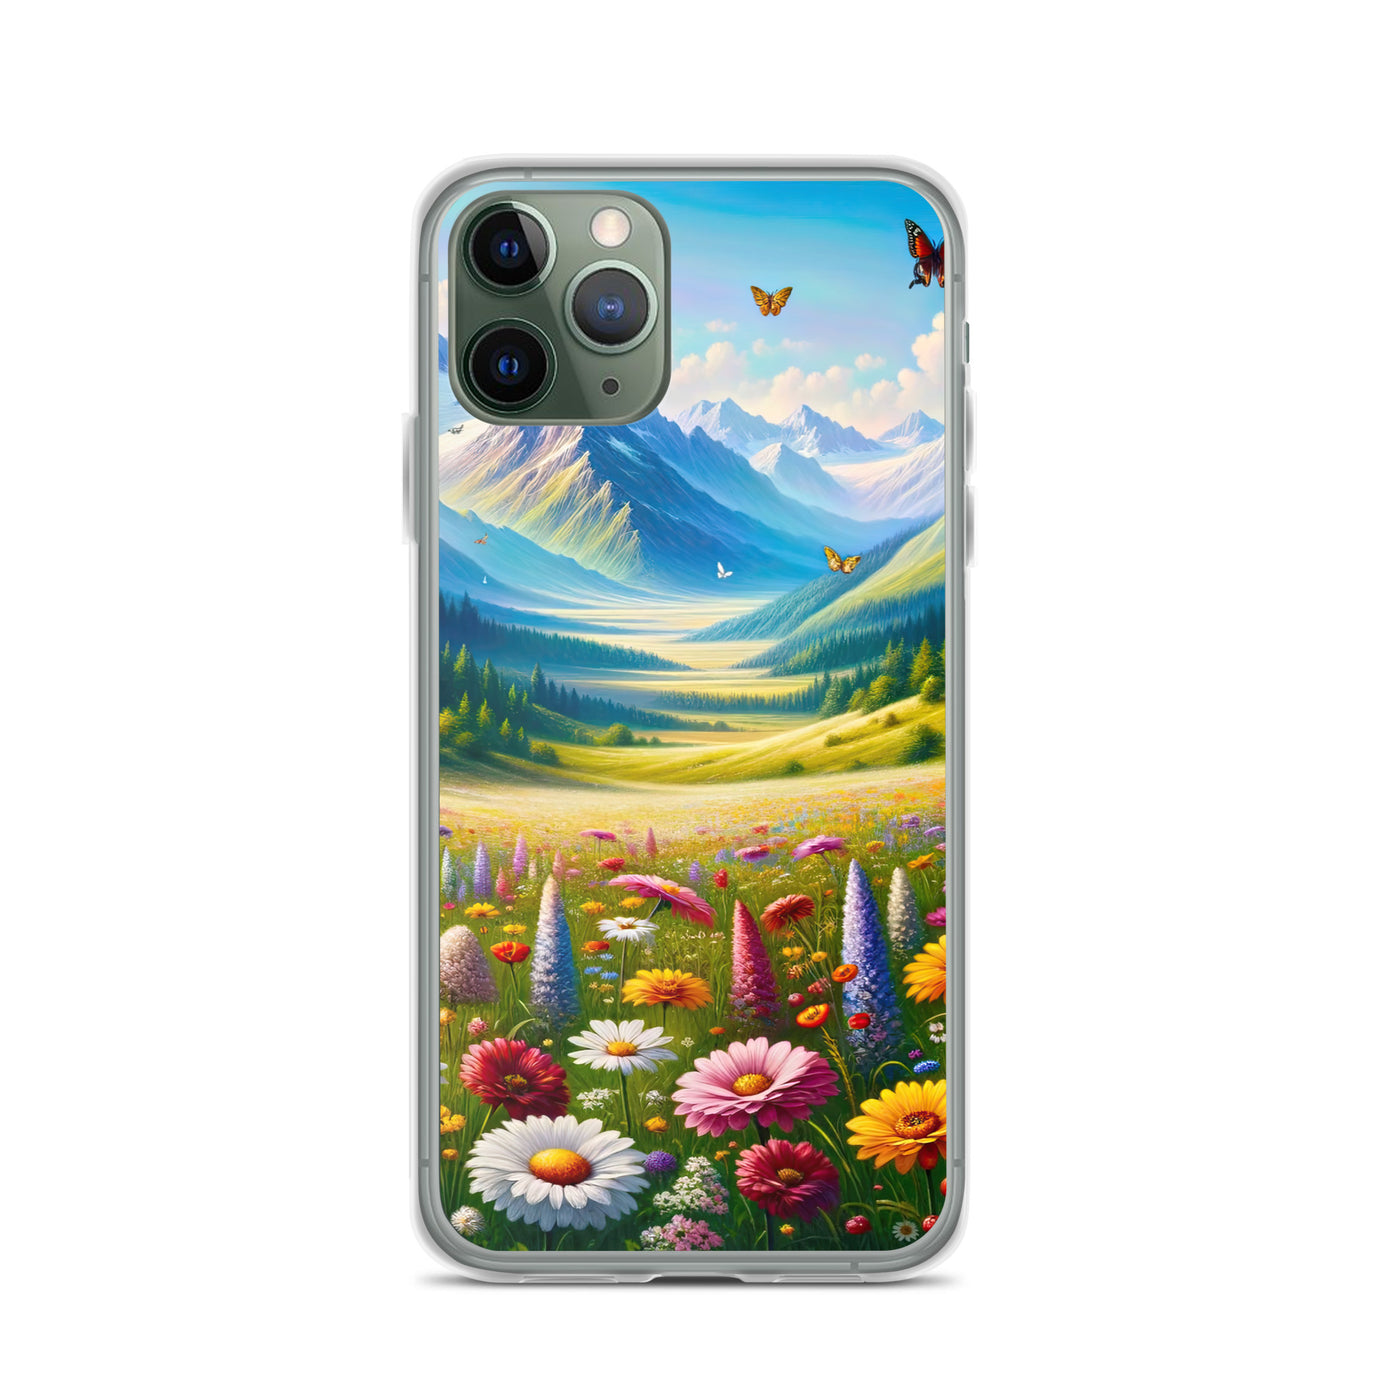 Ölgemälde einer ruhigen Almwiese, Oase mit bunter Wildblumenpracht - iPhone Schutzhülle (durchsichtig) camping xxx yyy zzz iPhone 11 Pro